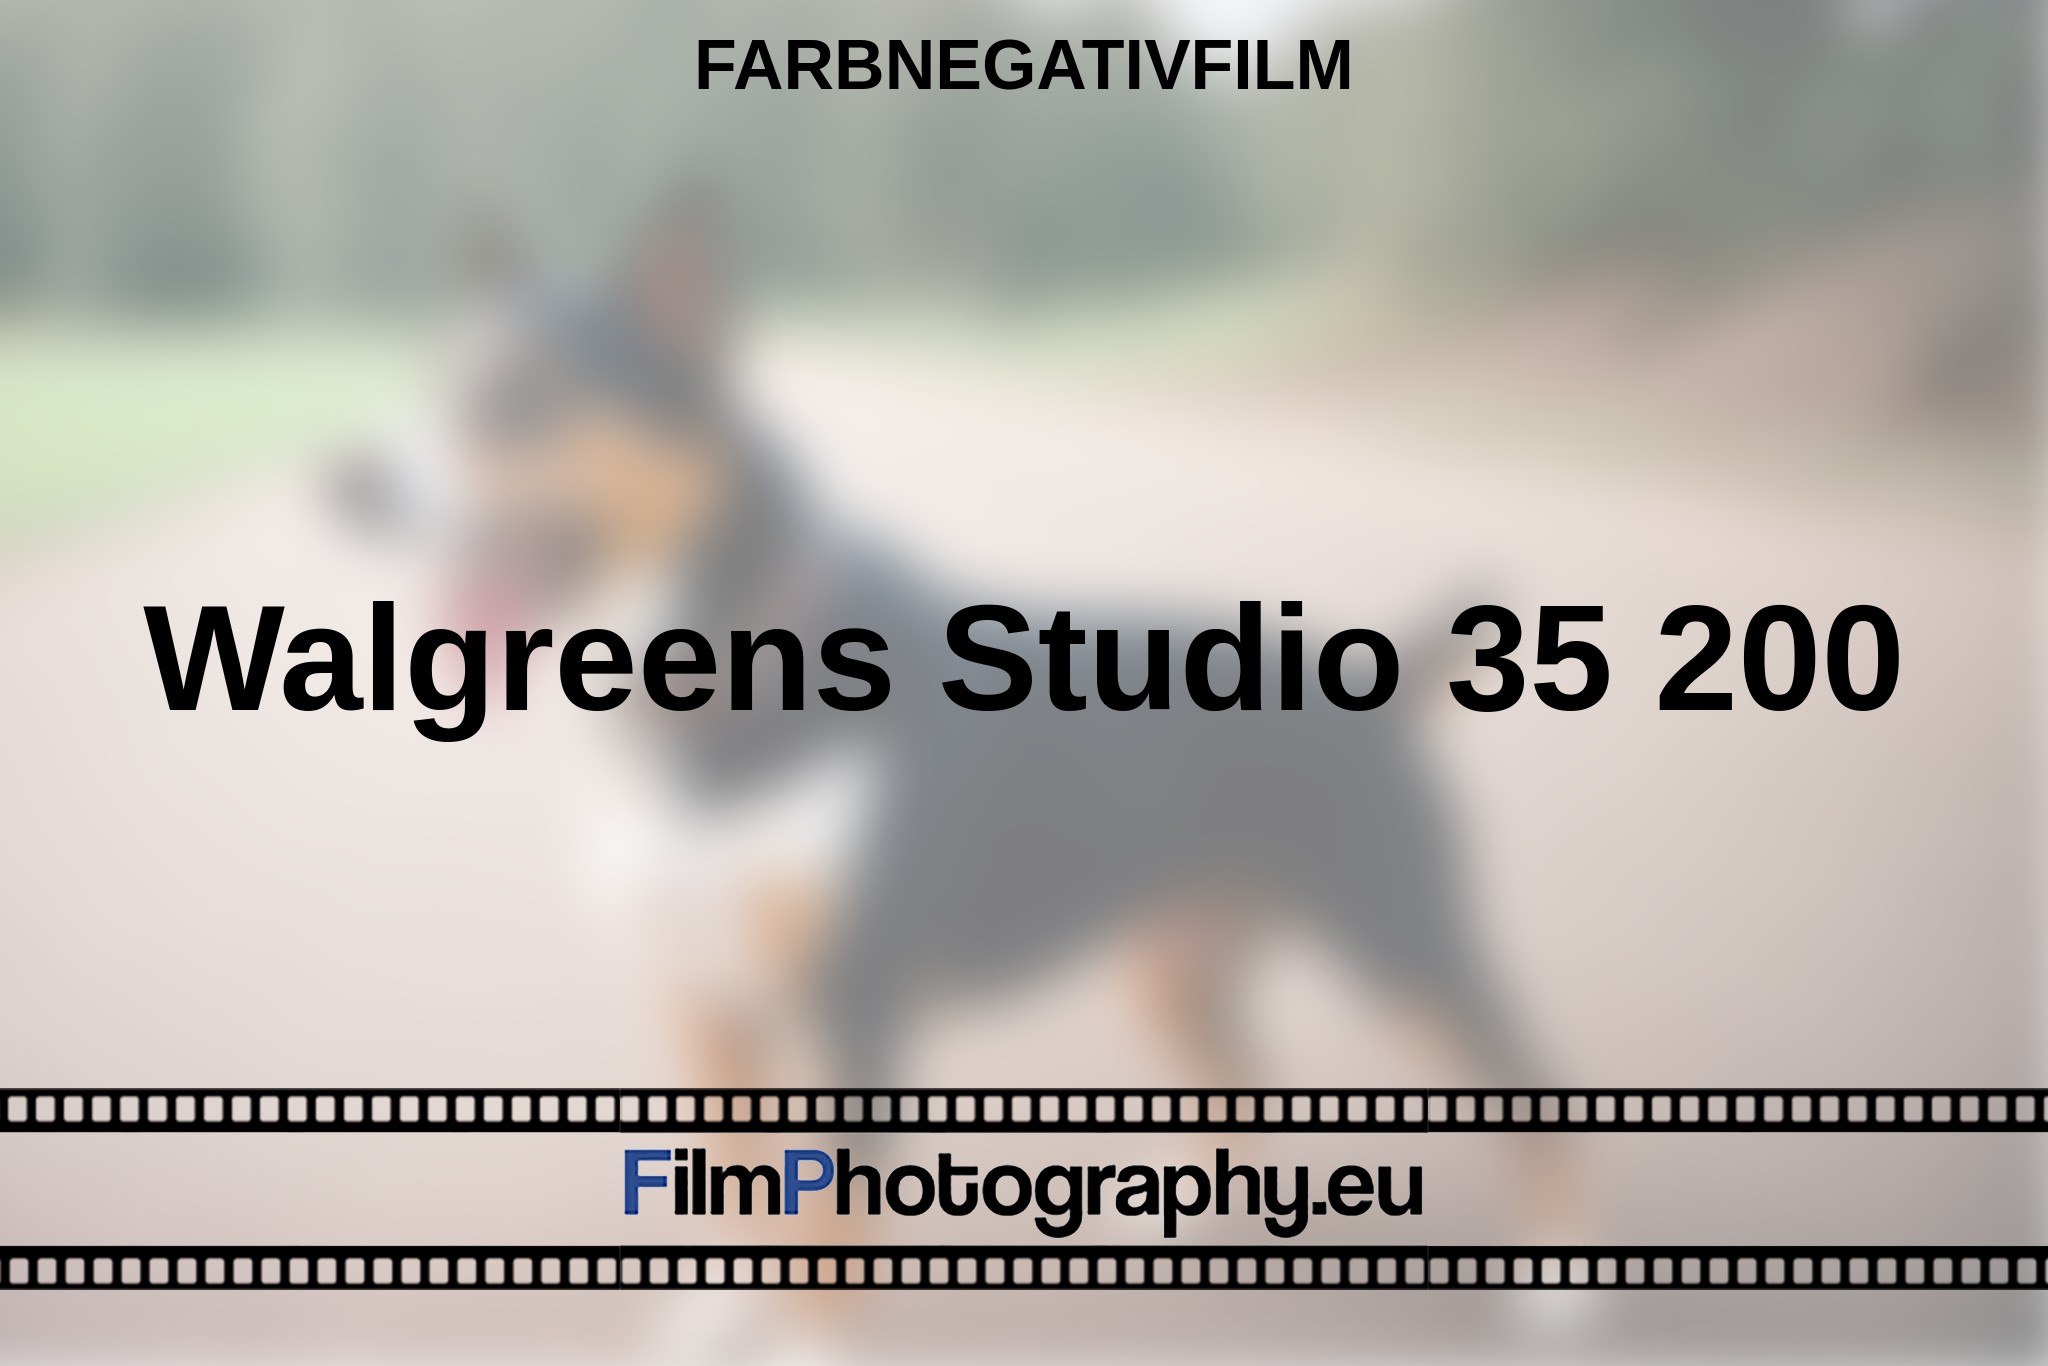 walgreens-studio-35-200-farbnegativfilm-bnv.jpg